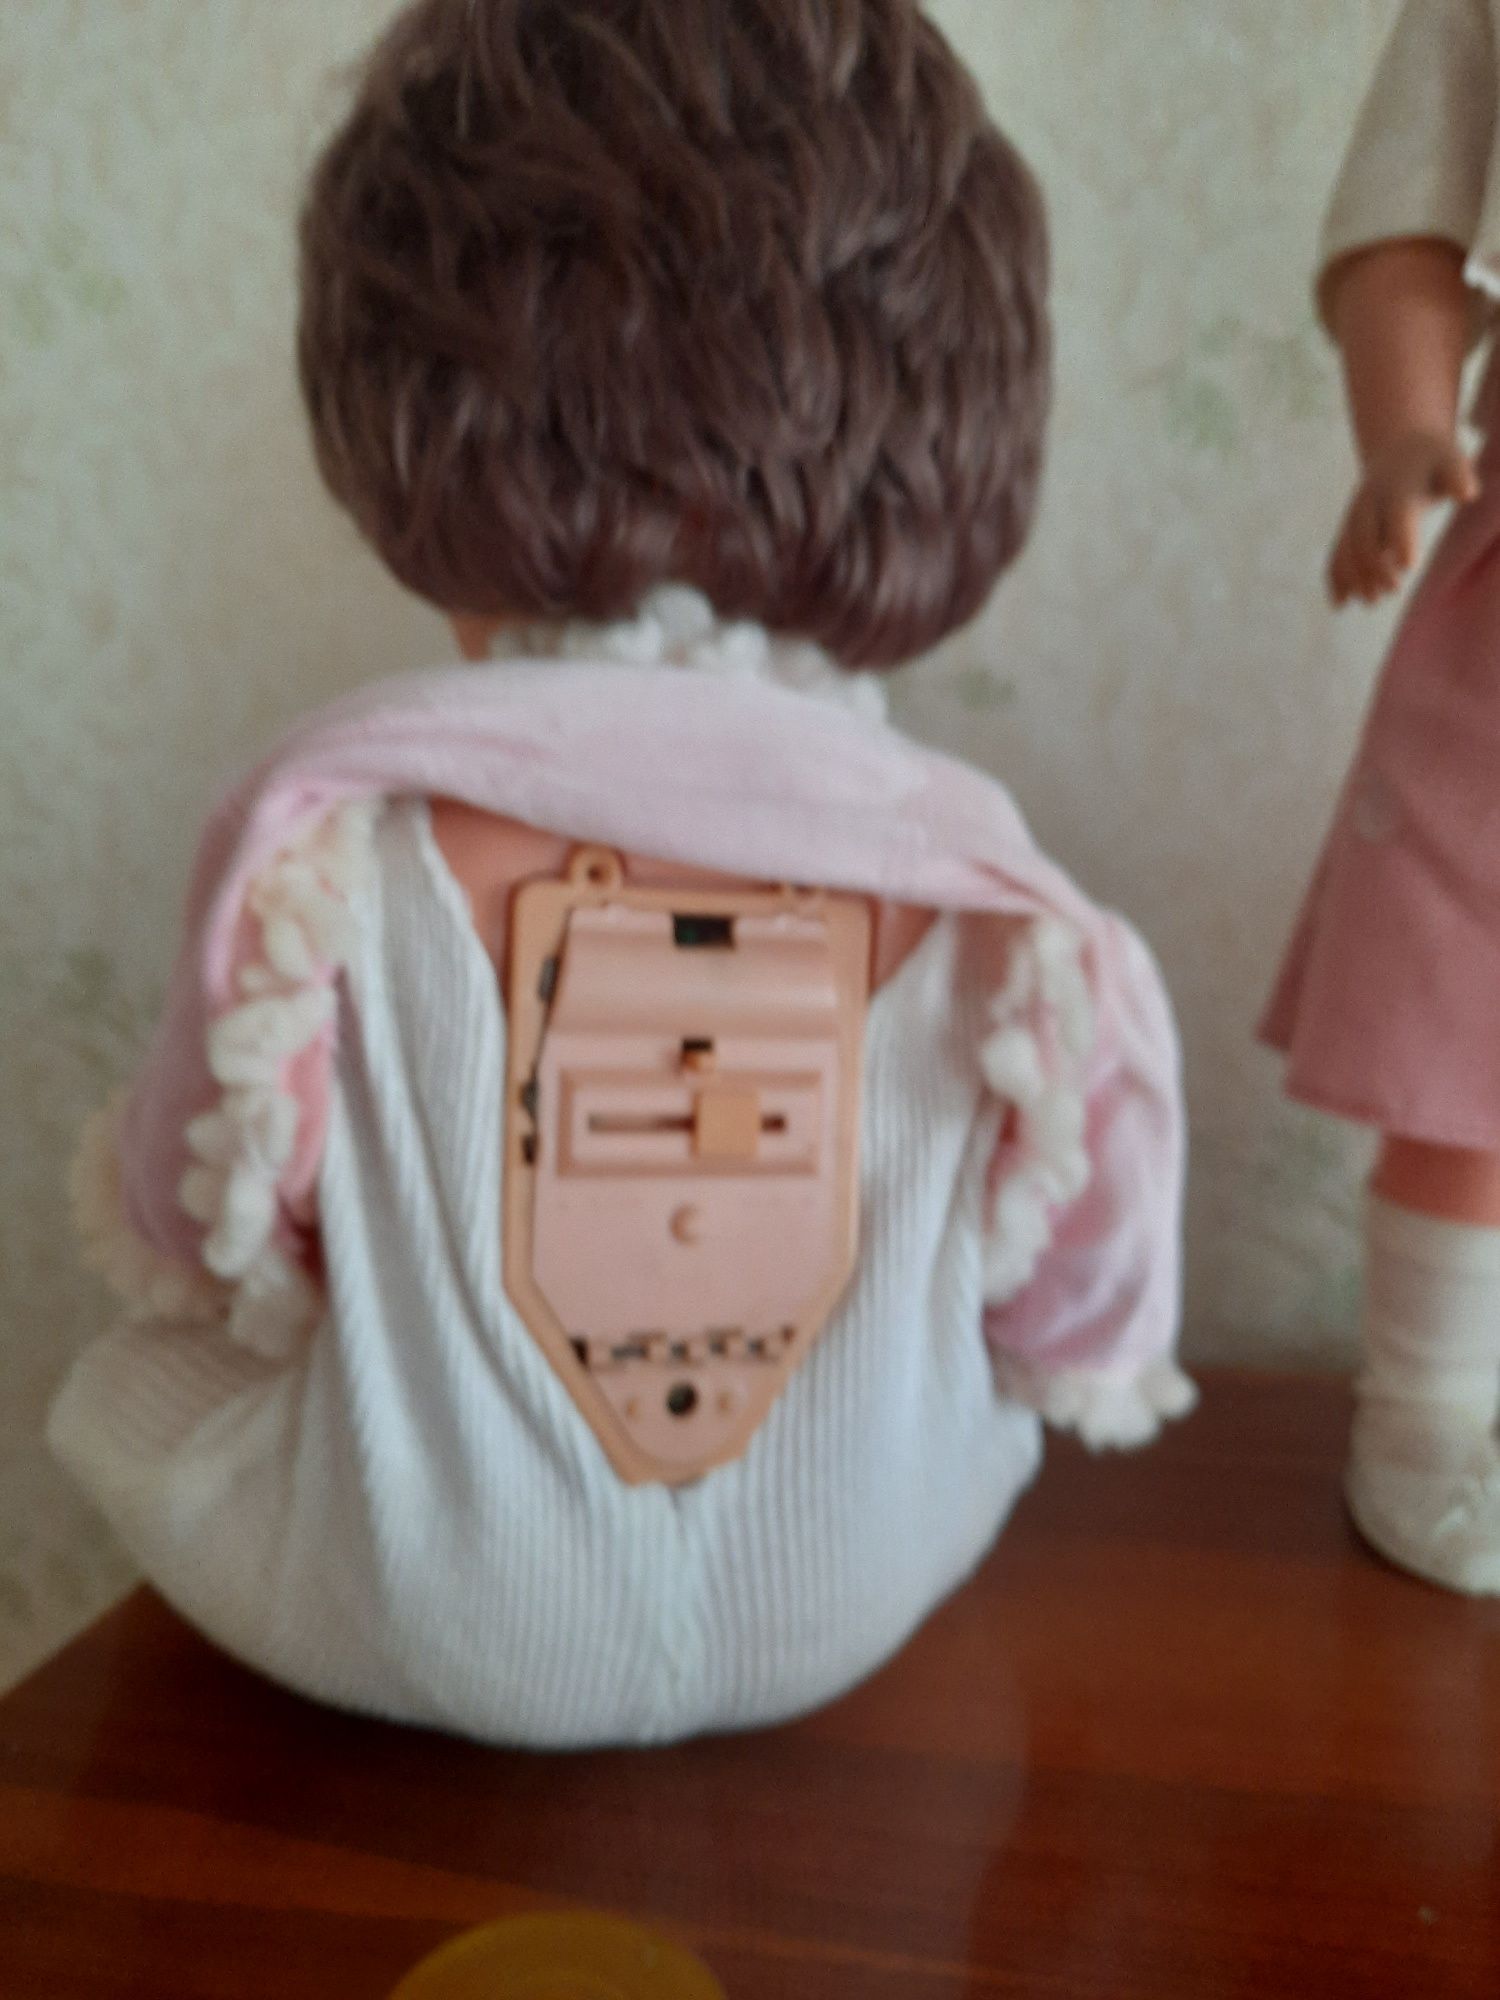 Продам німецькі кукли, виробництва ГДР